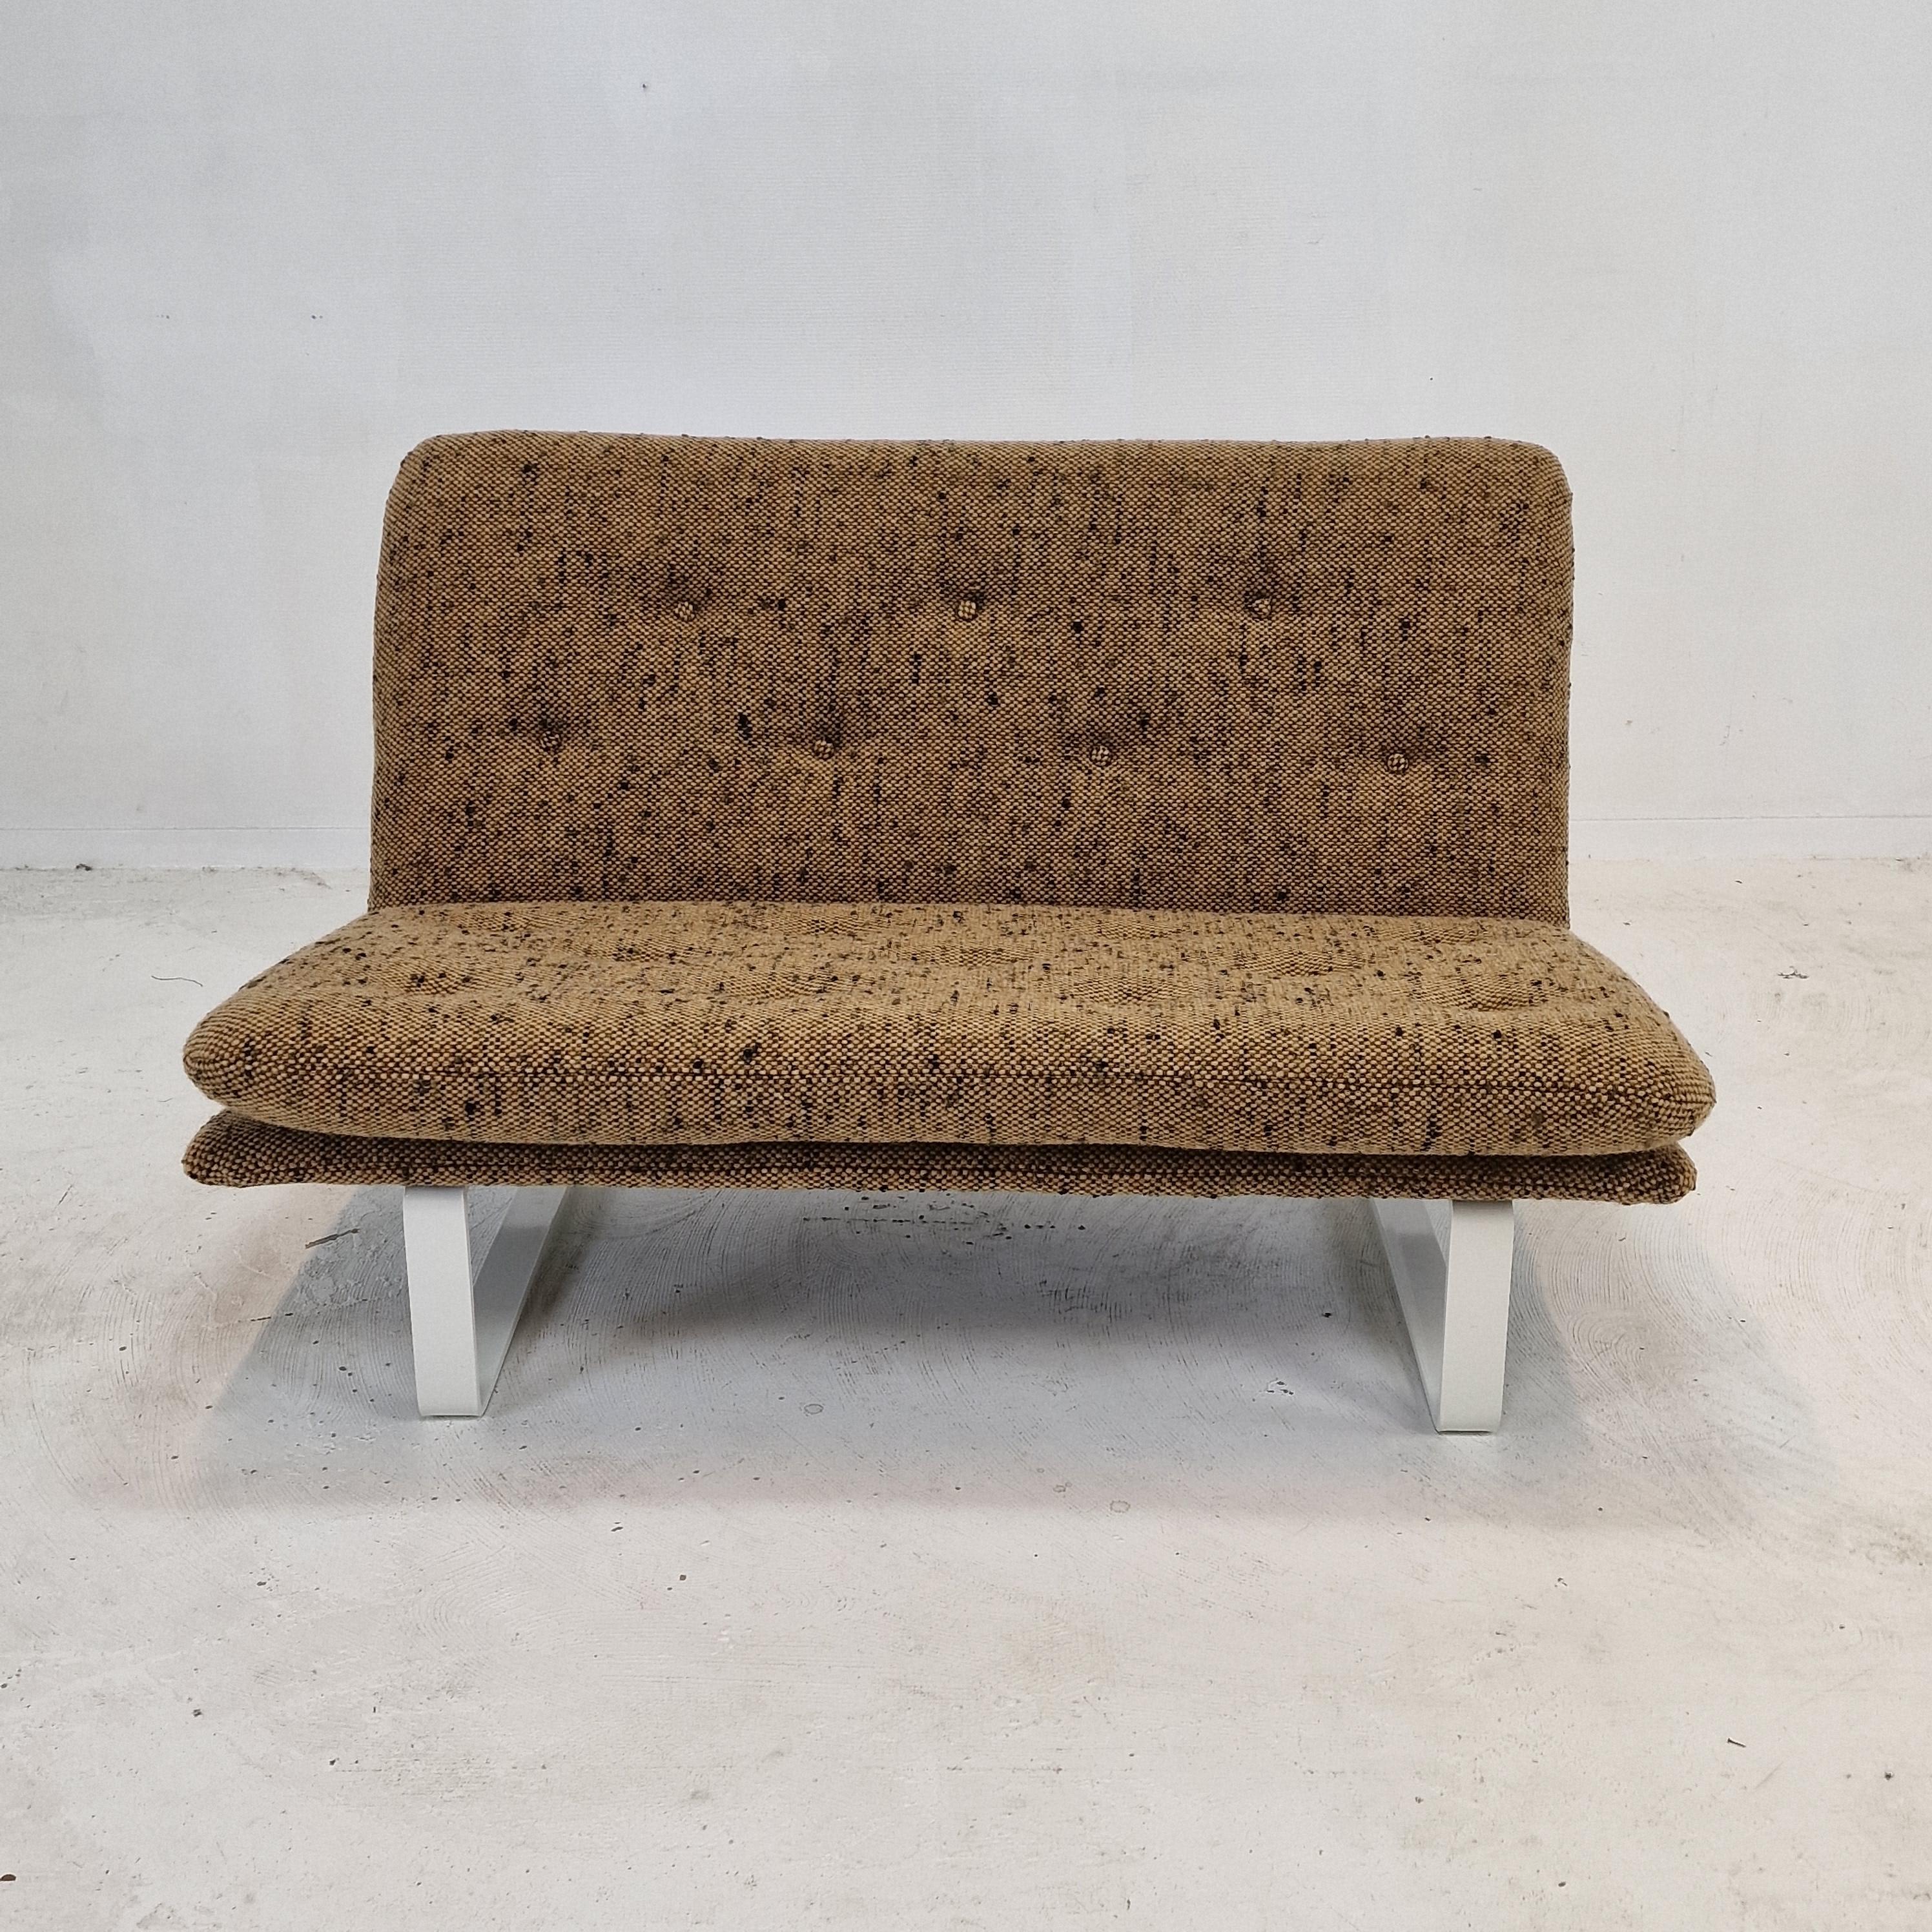 Canapé 2 places étonnant et confortable conçu par Kho Liang Ie. 
Fabriqué par Artifort dans les années 1960. 

Très solide et de haute qualité, fabriqué avec les meilleurs matériaux.

Le canapé vient d'être retapissé avec un fantastique tissu